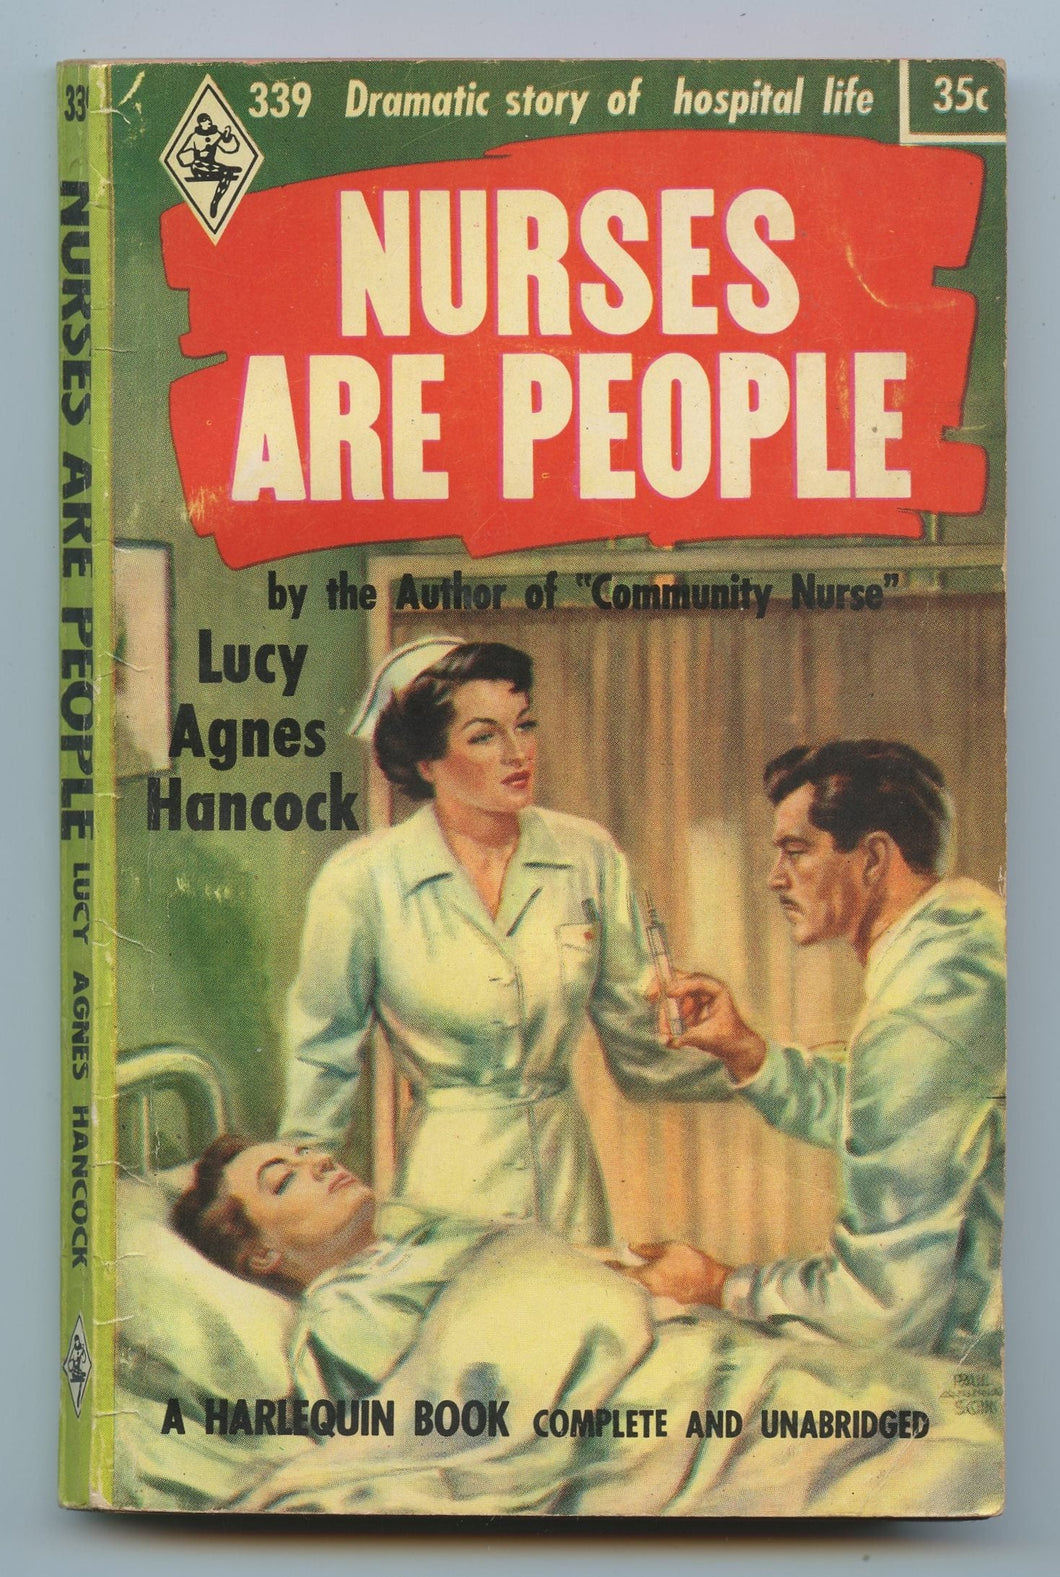 Nurses Are People